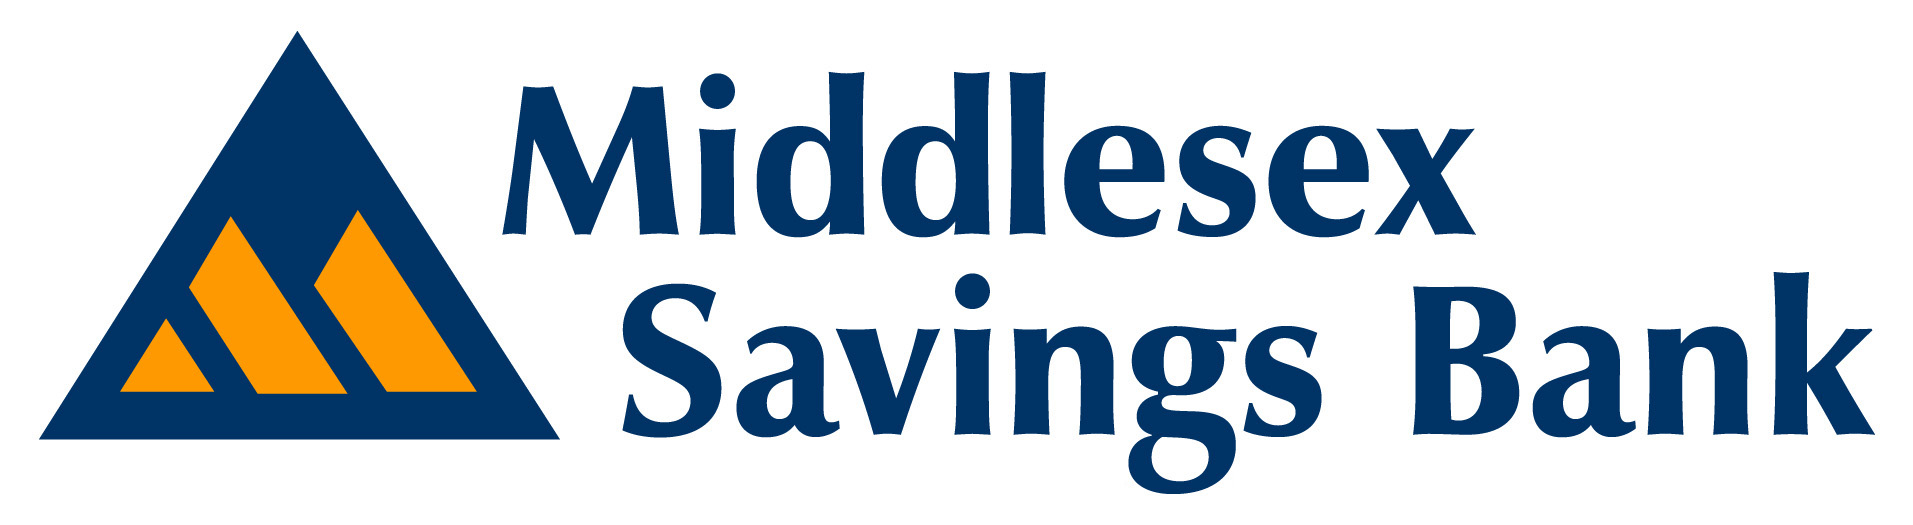 Middlesex Saving Bank